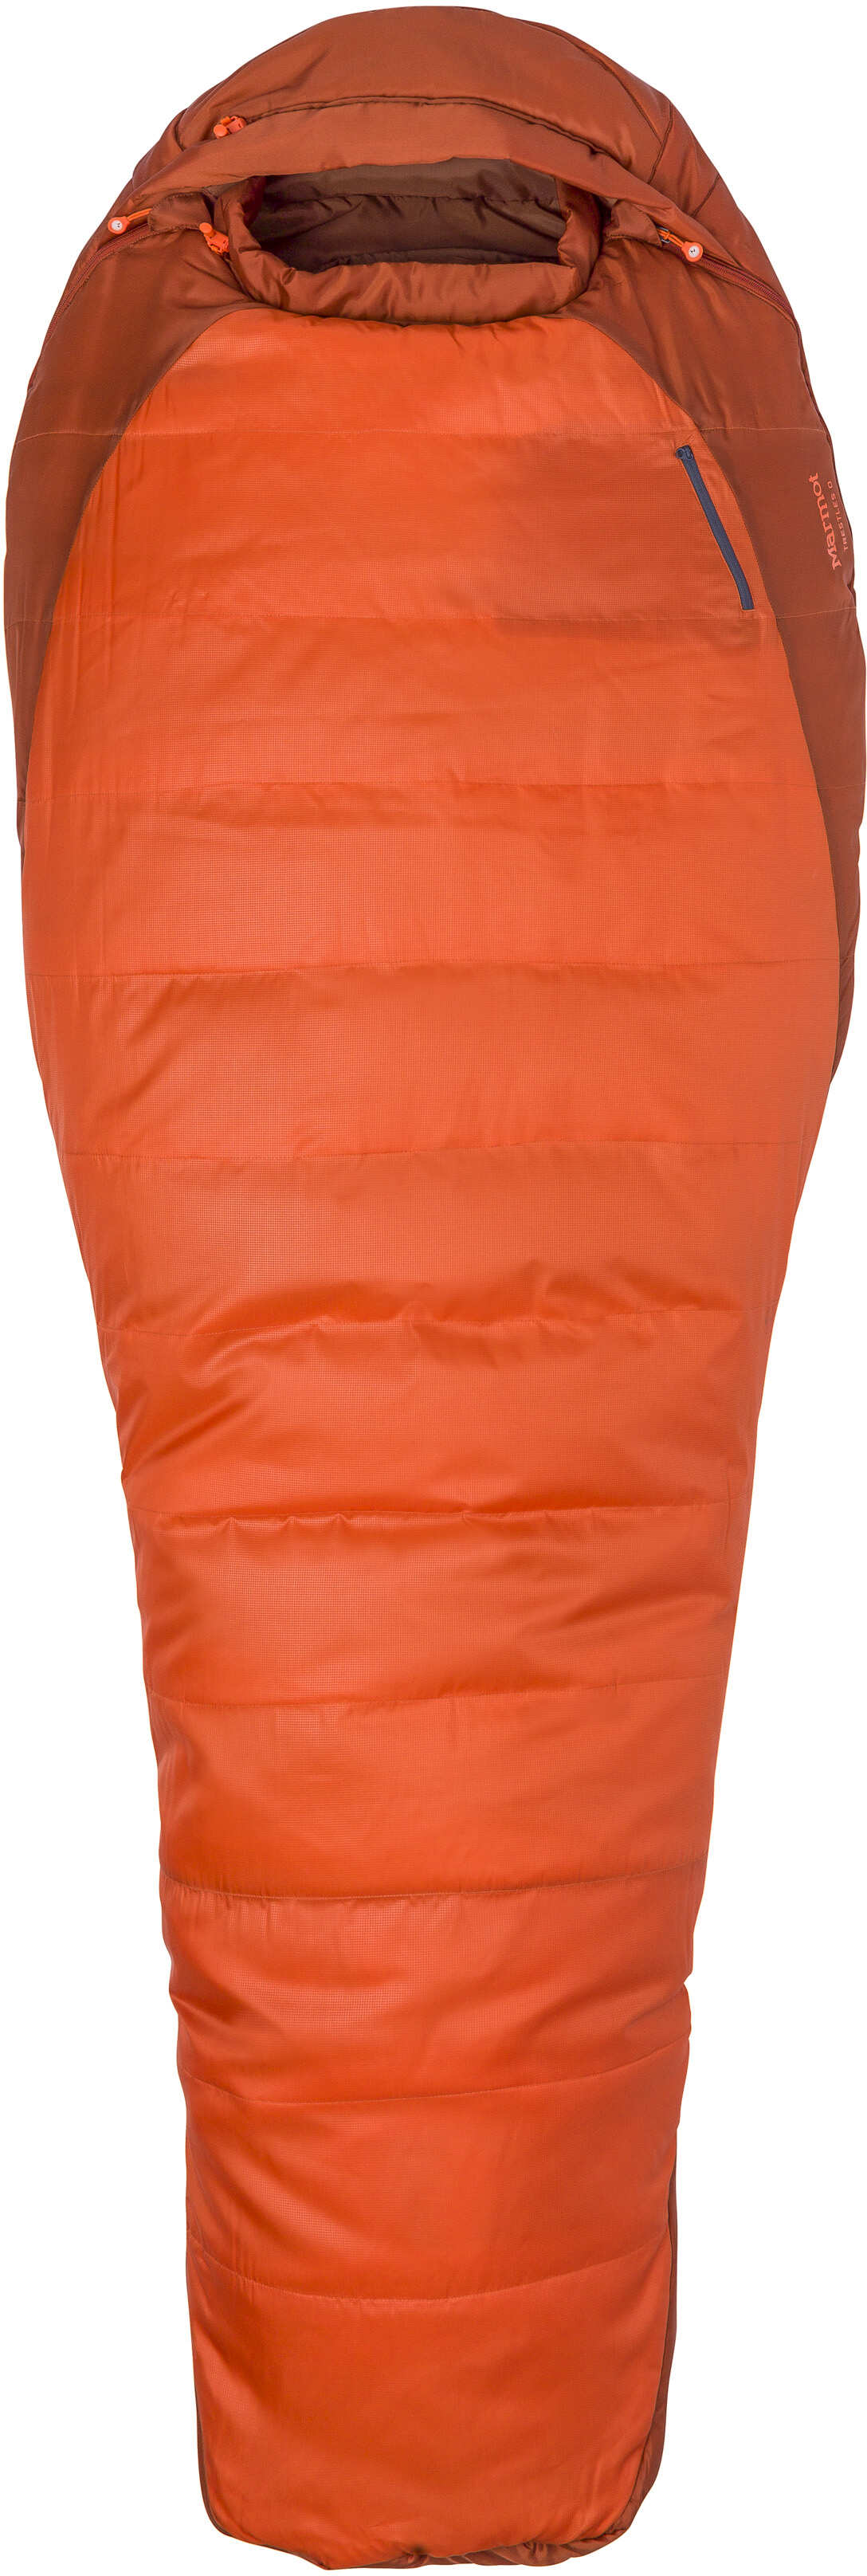 фото Спальный мешок marmot trestles темно-оранжевый правый